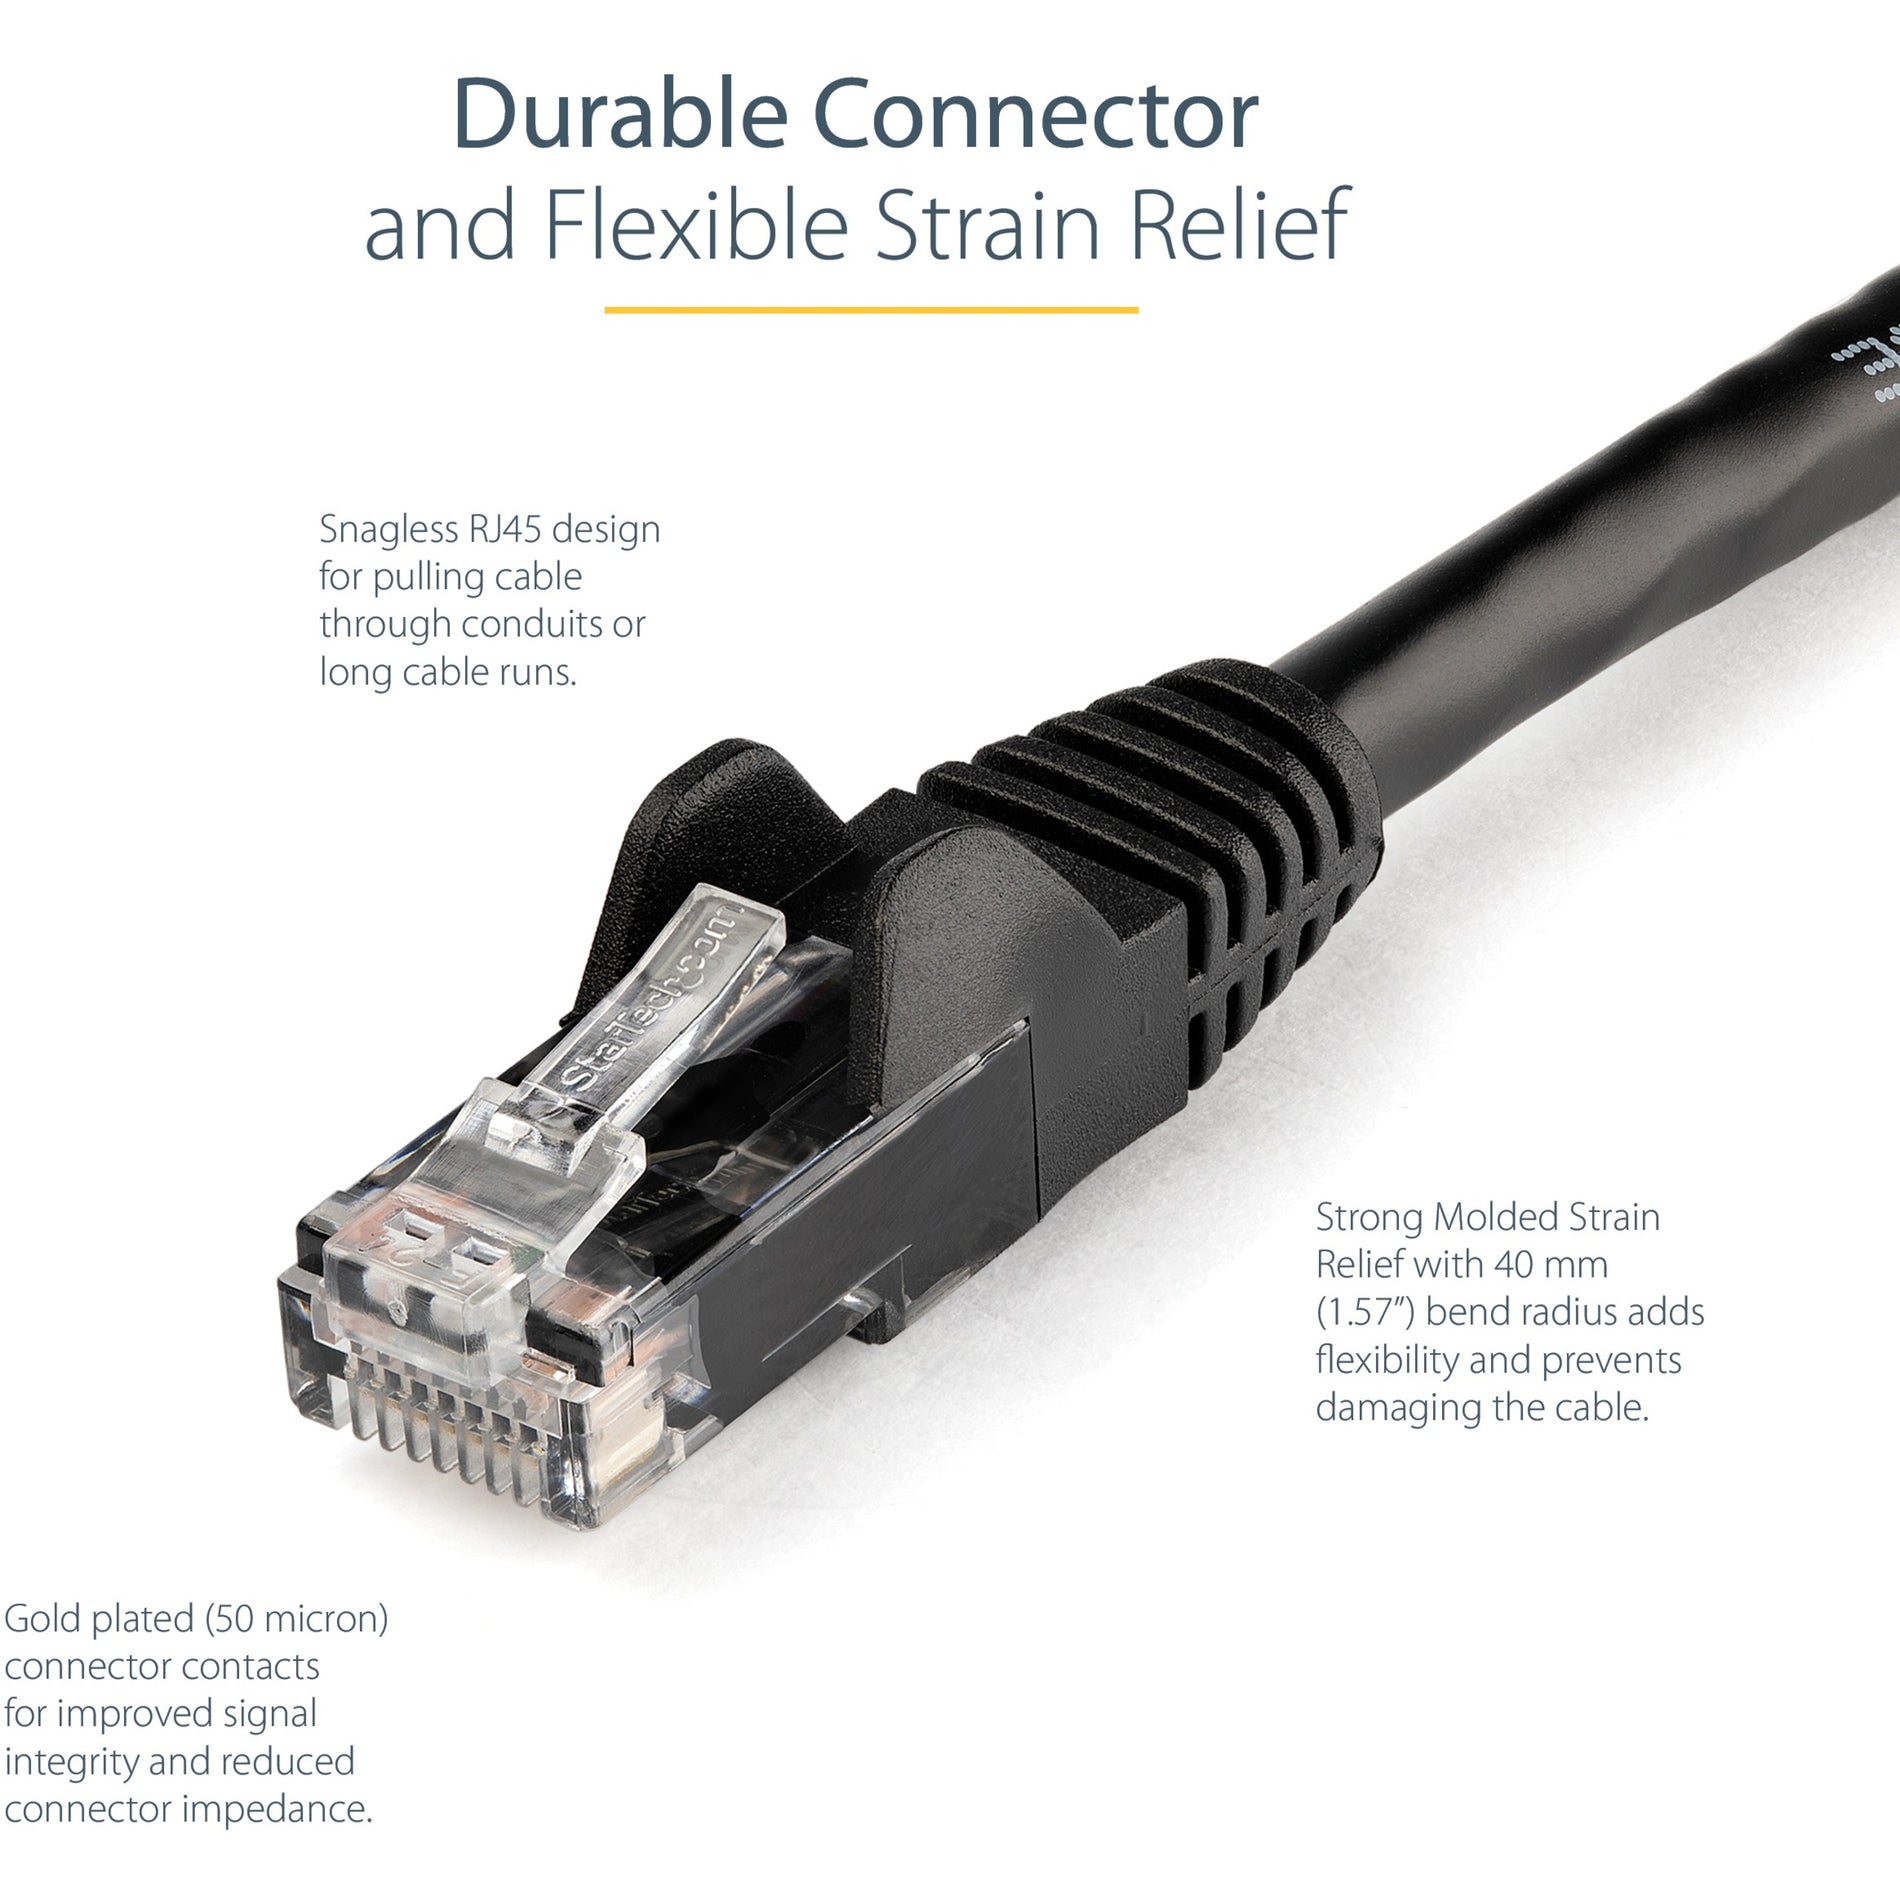 Marca: StarTech.com Cable de conexión Cat. 6 N6PATCH3BK 3 ft Negro Sin enganches ETL Verificado